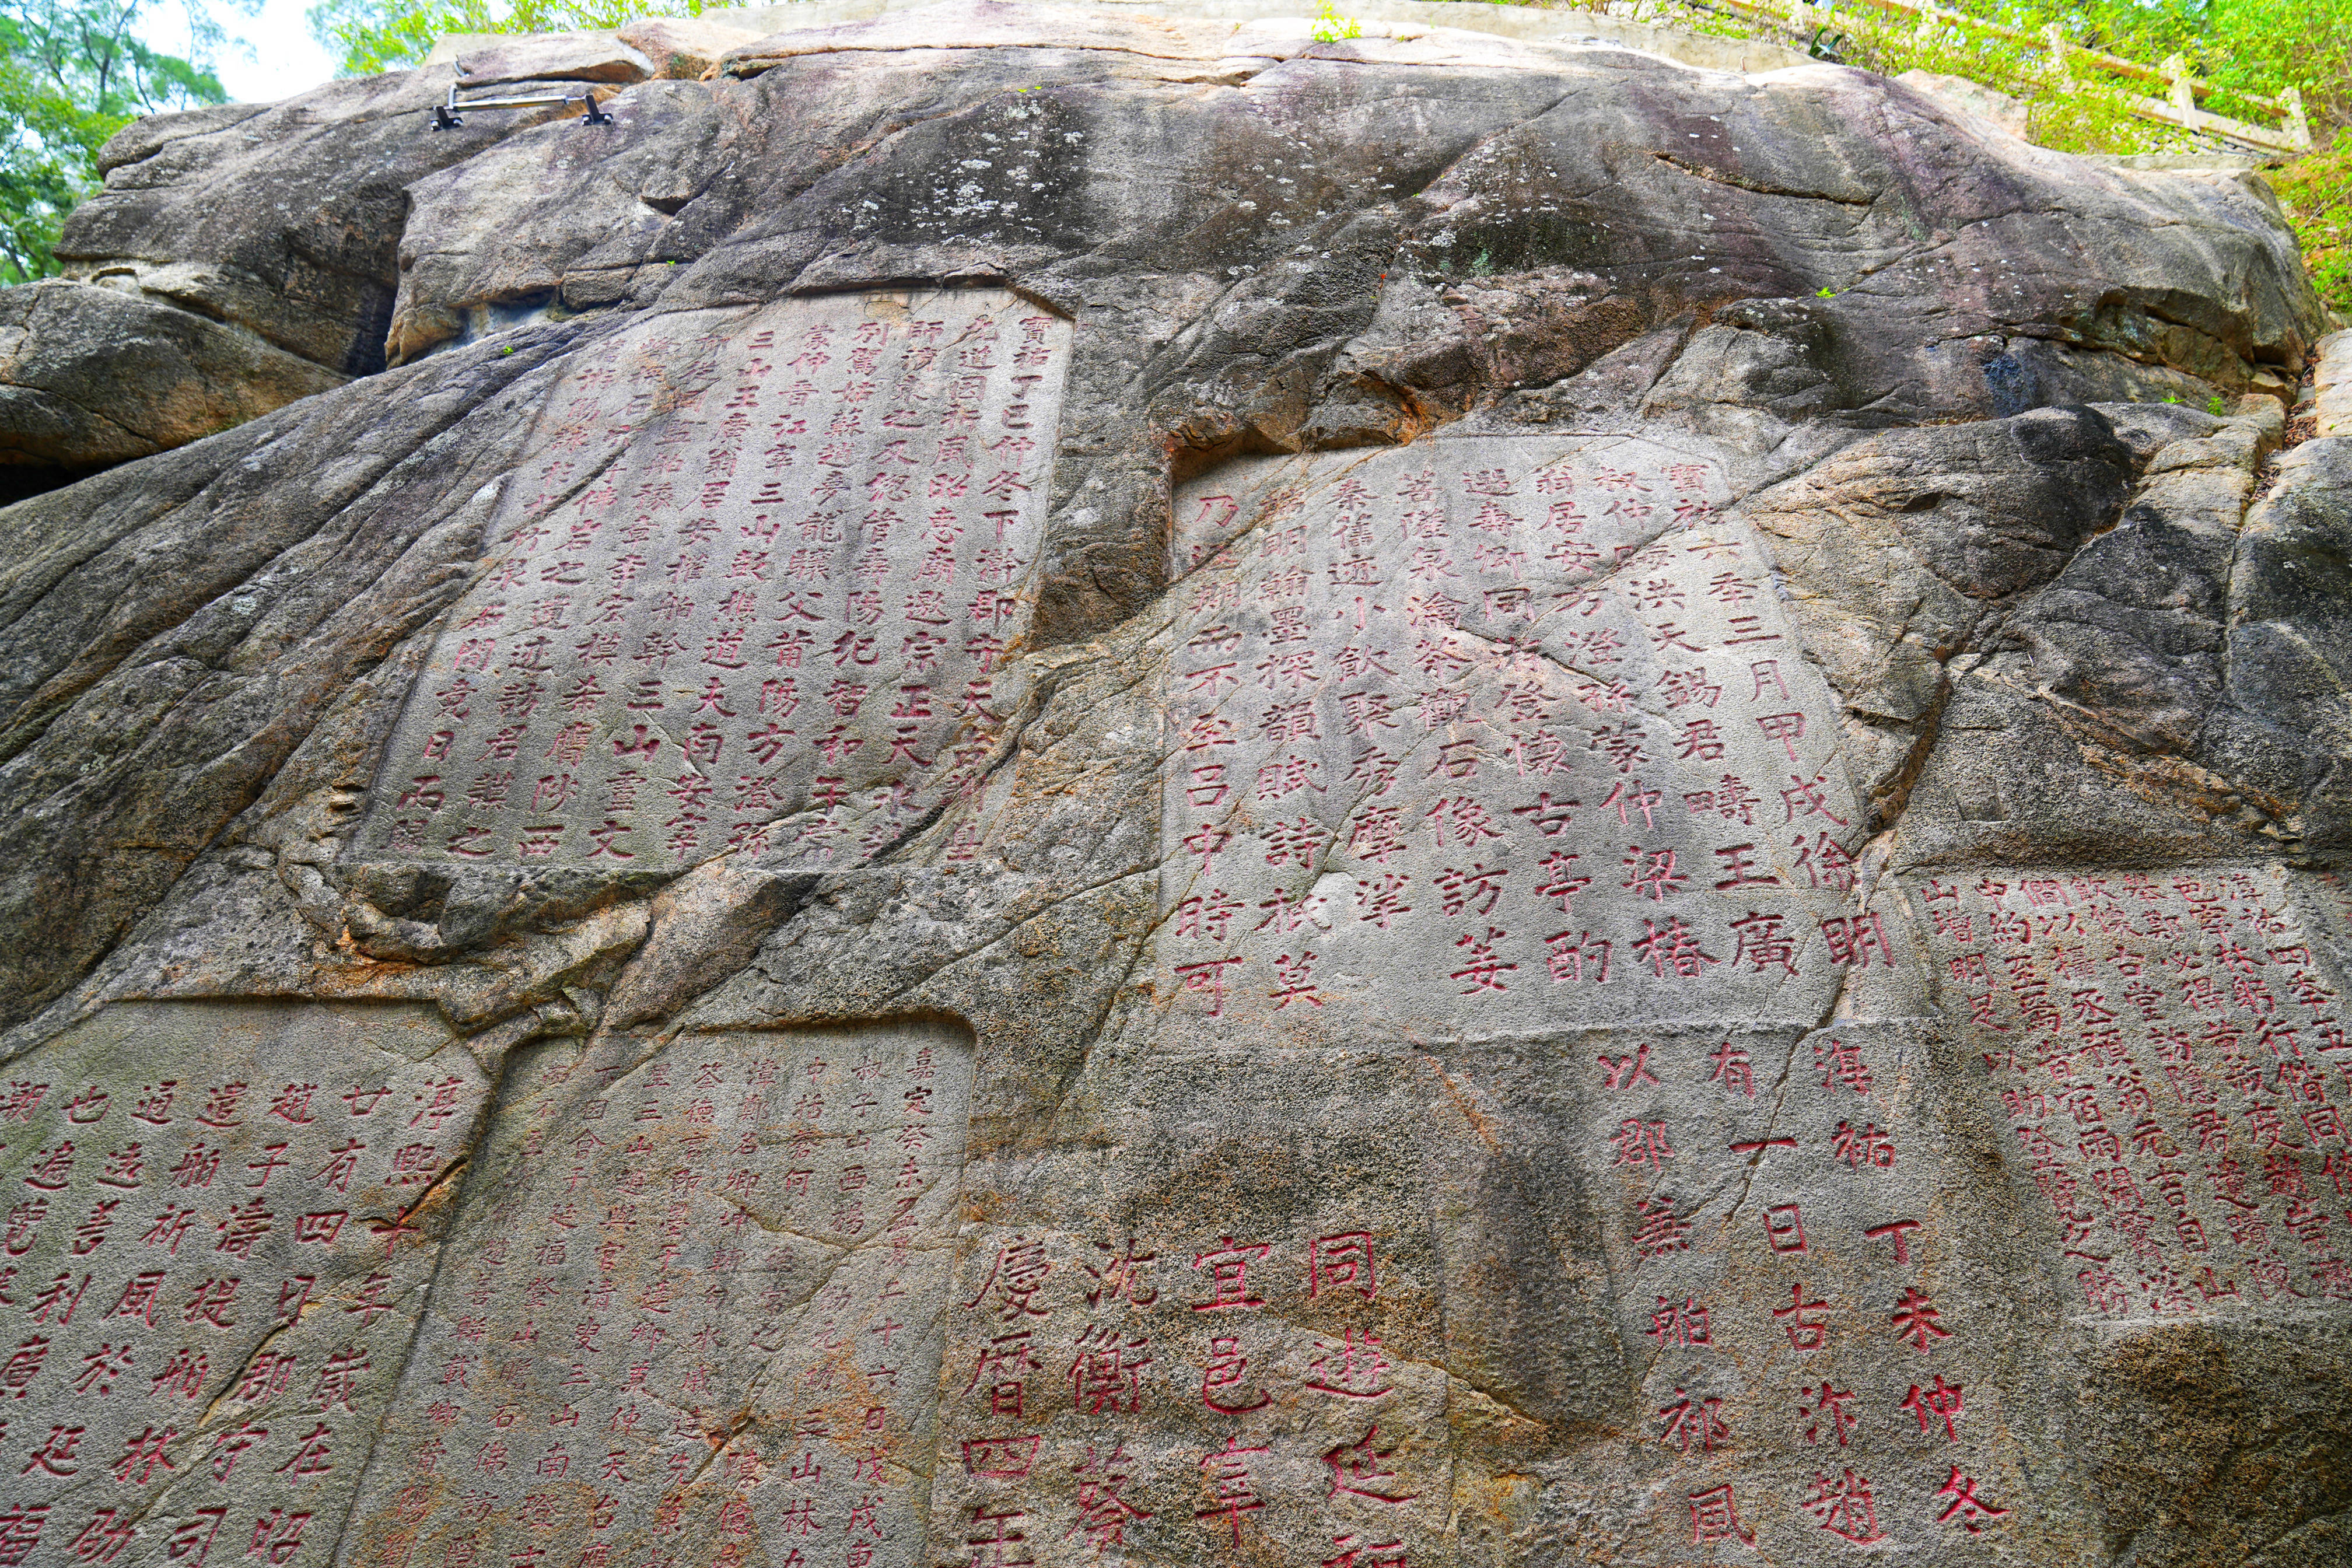 跟着世界文化遗产游泉州,老君造像仙风道骨,九日山石刻年代久远